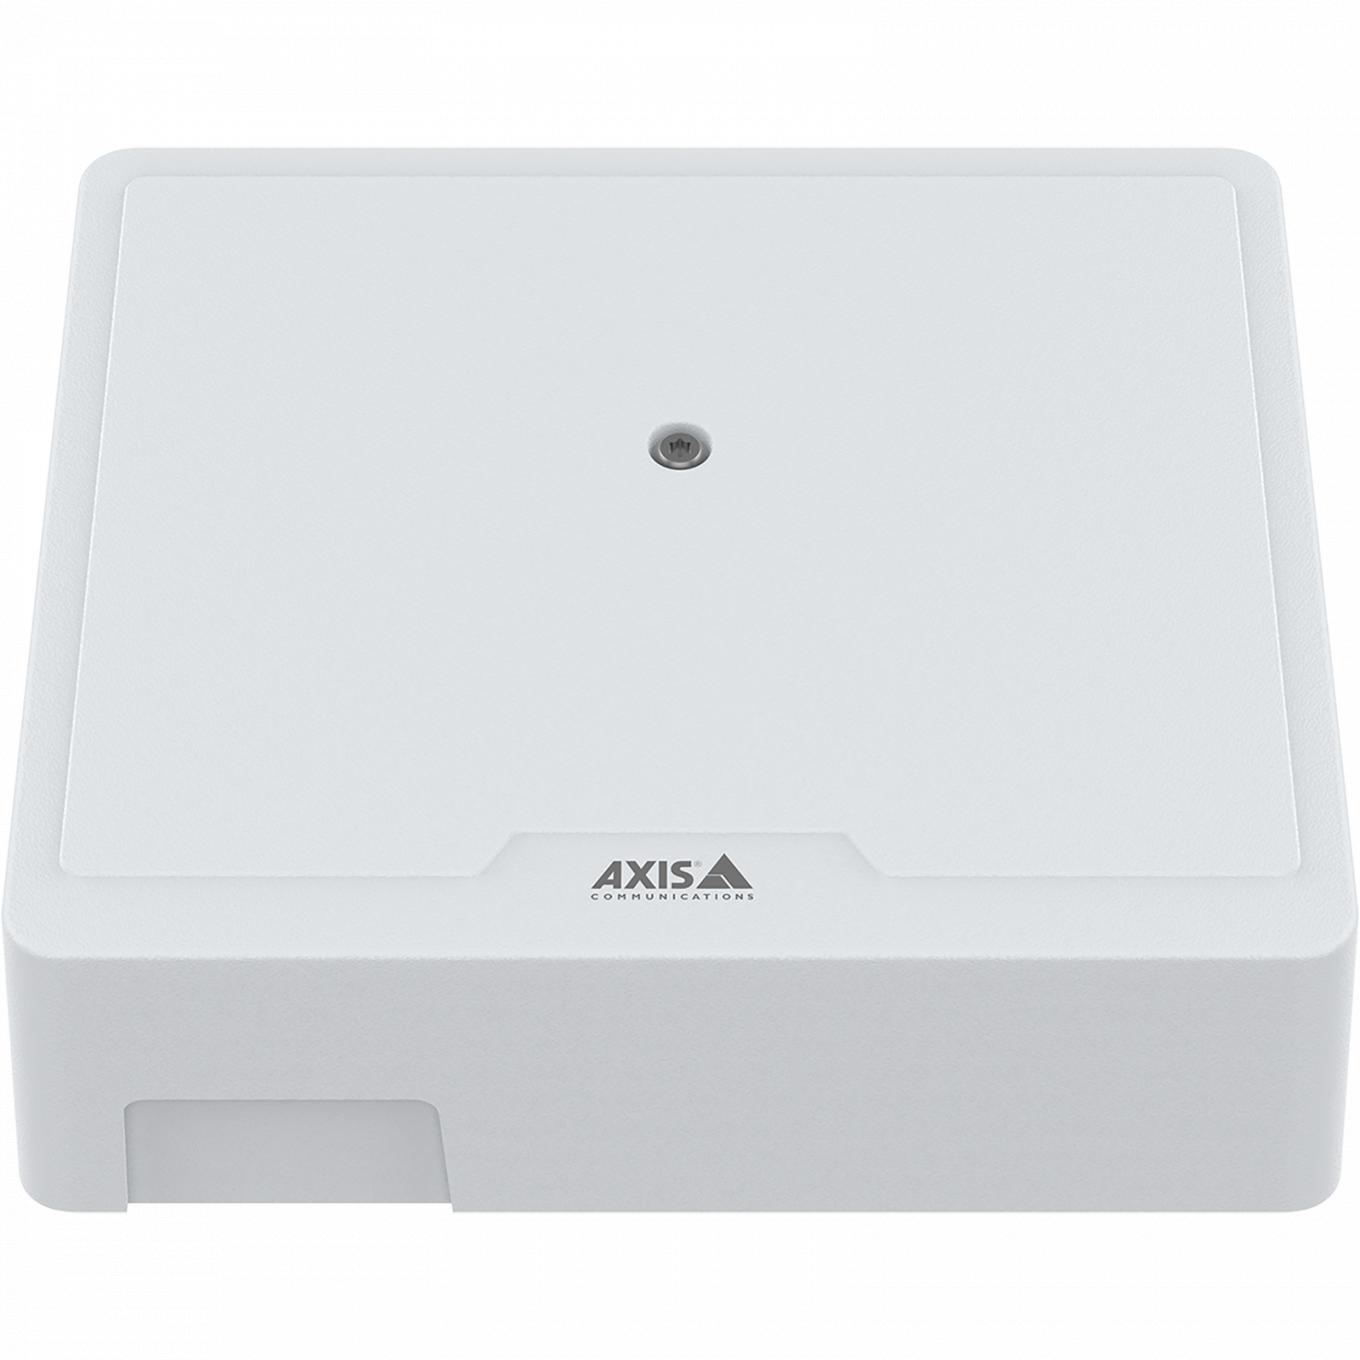 AXIS A1210 Network Door Controller, von vorne gesehen